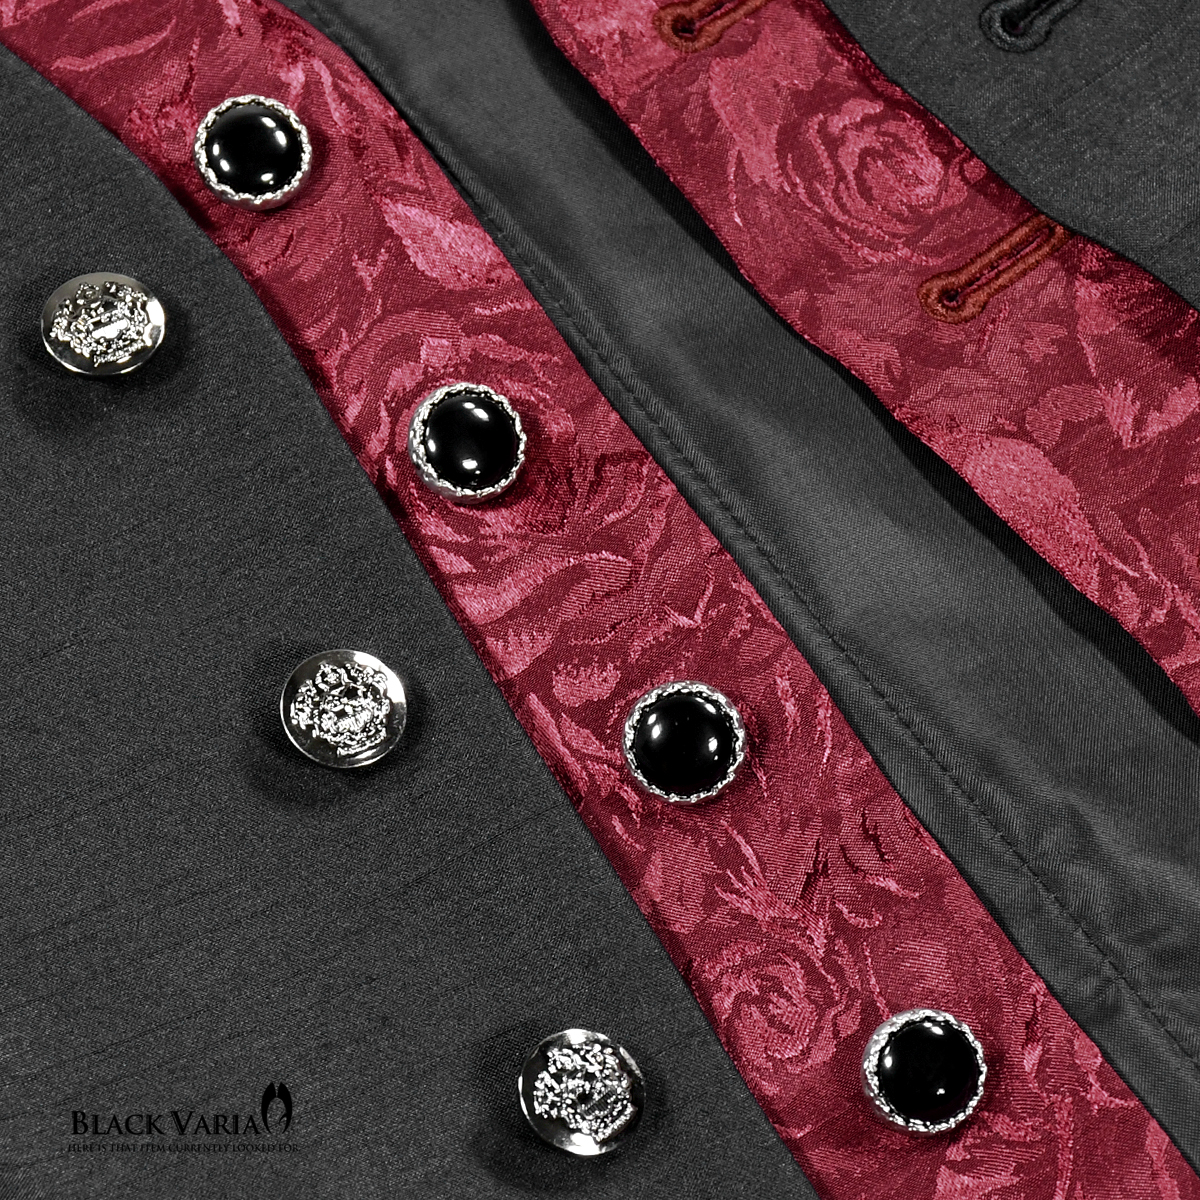 BlackVaria жилет лучший роза рисунок поддельный Layered жилет формальный тонкий Fit стрейч party мужской сделано в Японии ( черный чёрный × wine red красный ) 927778